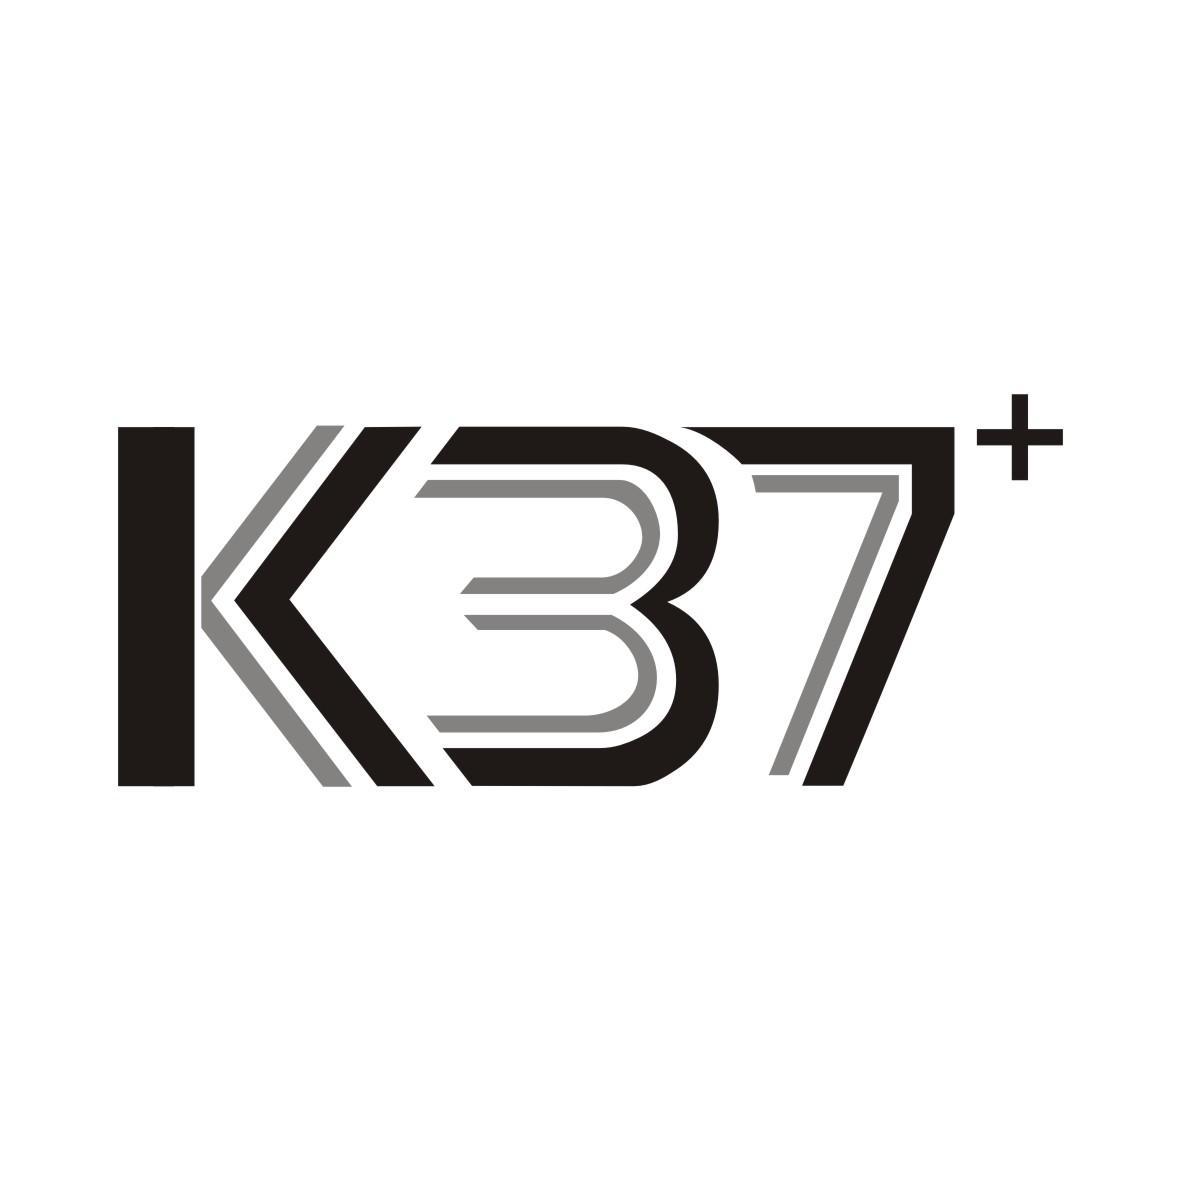 K 37+